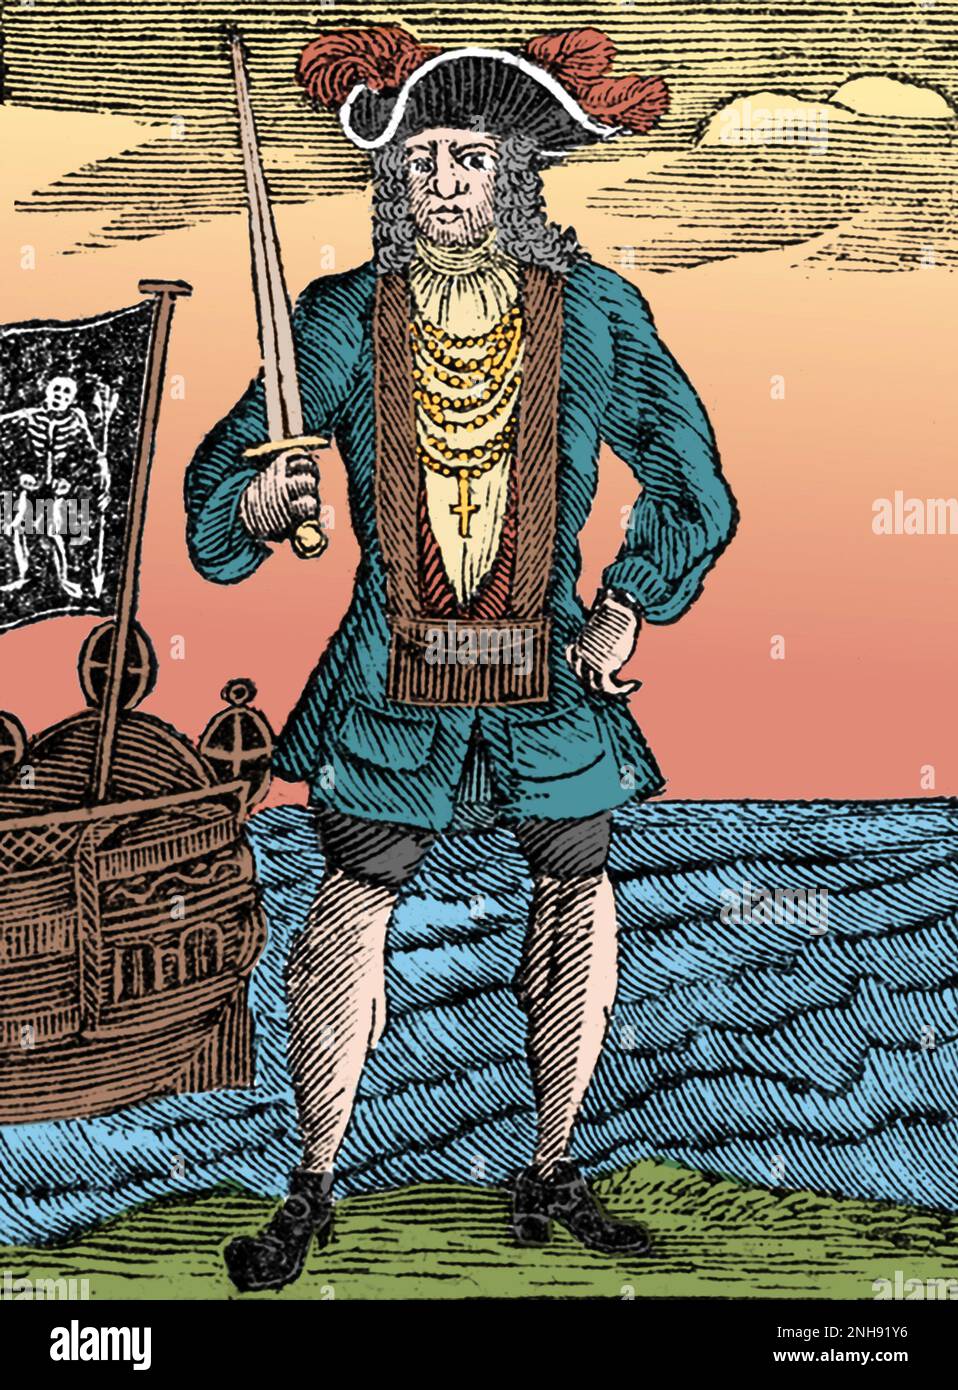 Bartholomew Roberts (1682-1722), geboren John Roberts, war ein walisischer Pirat und der erfolgreichste Pirat des Goldenen Zeitalters der Piraterie, gemessen an gefangenen Schiffen. Illustration aus „die Geschichte und das Leben der berüchtigtsten Piraten und ihrer Crews“, 1725. Gefärbt. Stockfoto